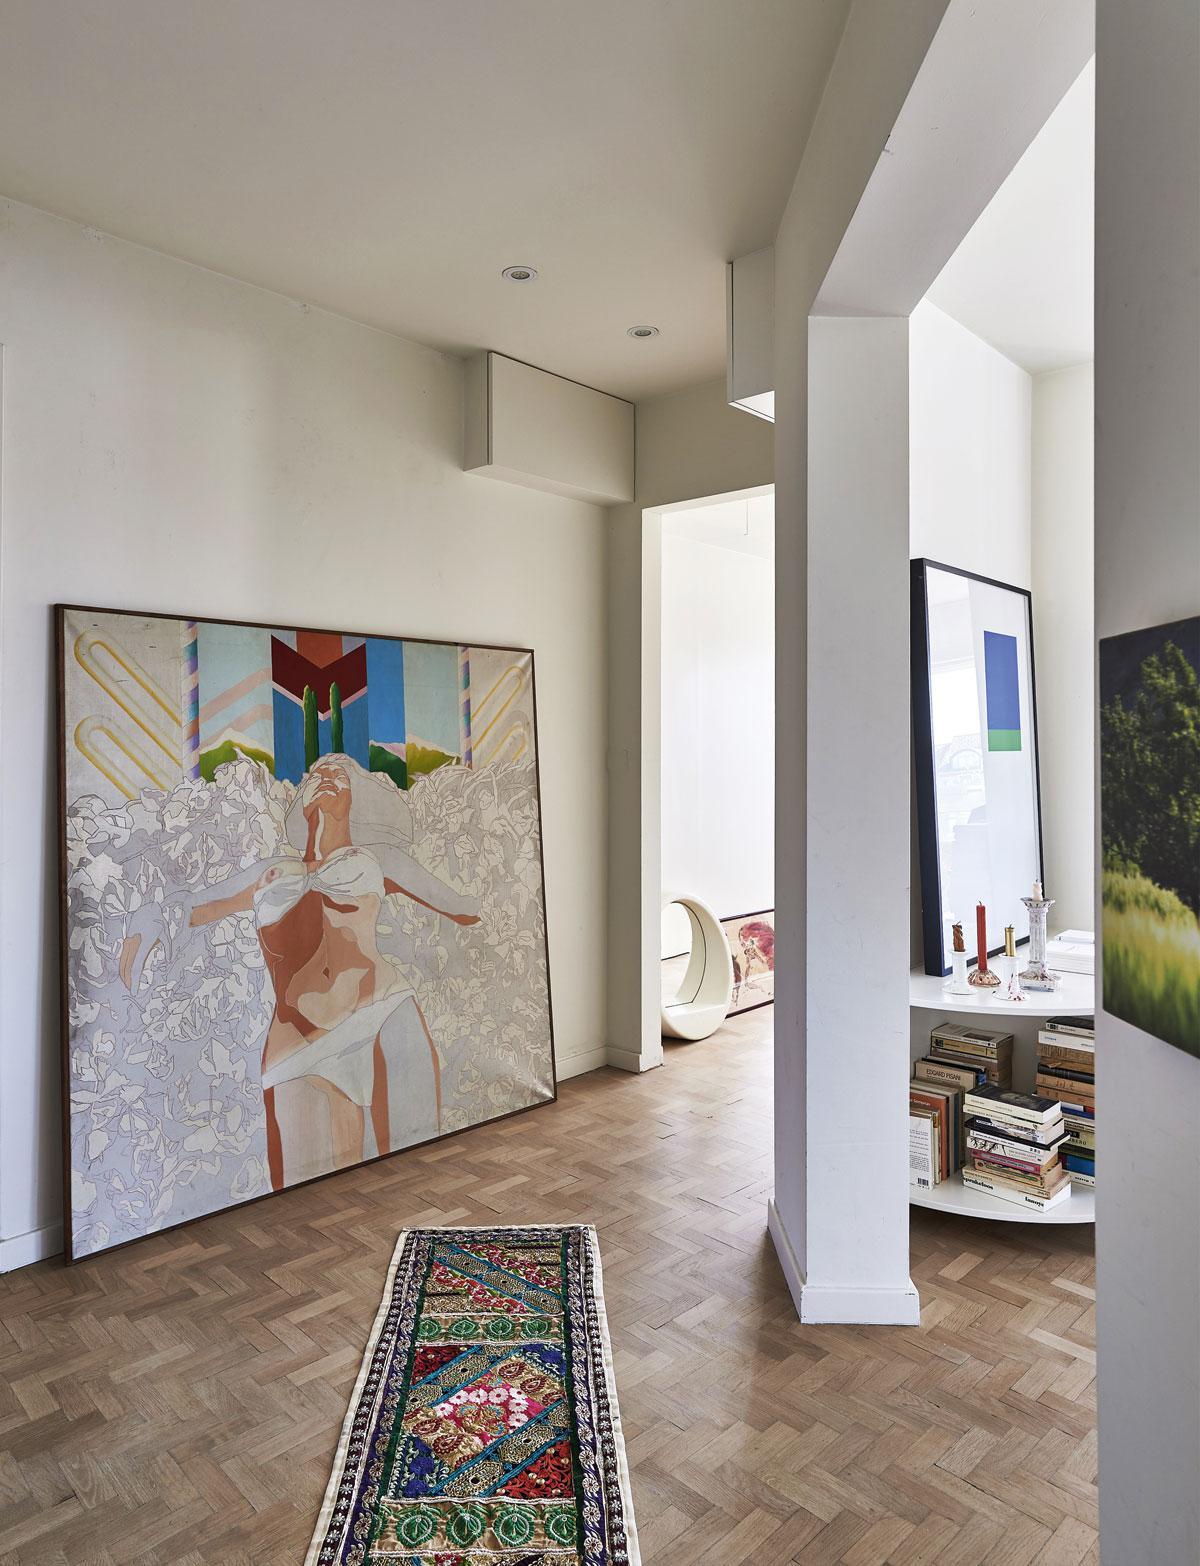 Boeken en kunst zijn omnipresent in Staelens’ appartement. De baadster is van Frank Liefooghe, het minimalistische werk in groen en blauw is van Stijn Cole.